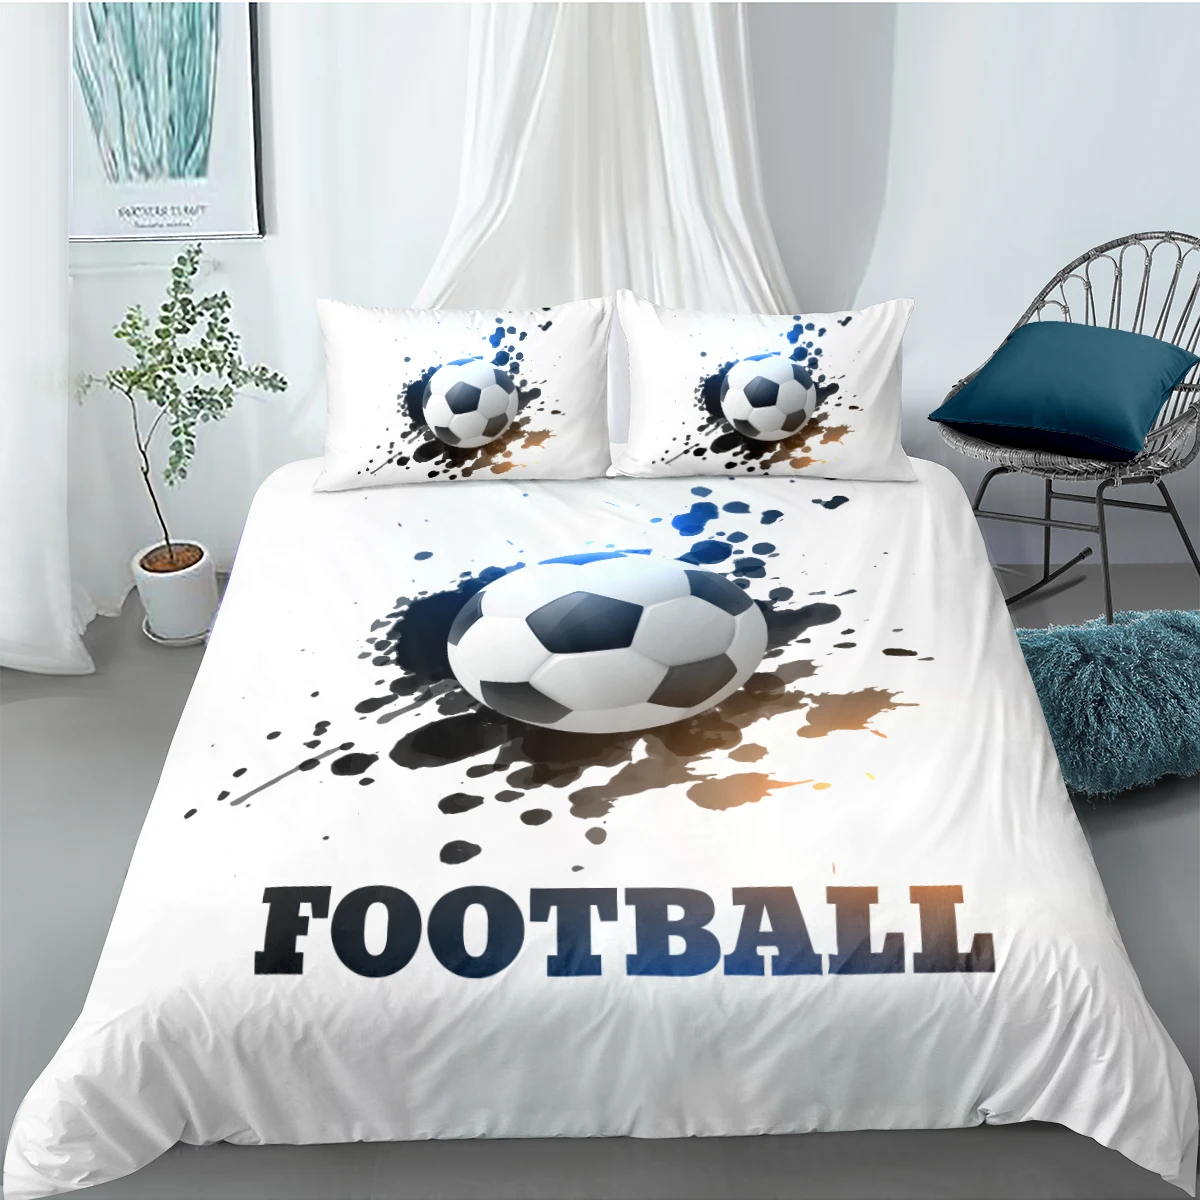 

Football Comforter Cases 3D White Duvet Cover Sets Pillow Slips Full Double Single Twin Queen Size 180*210cm Modern Beddings